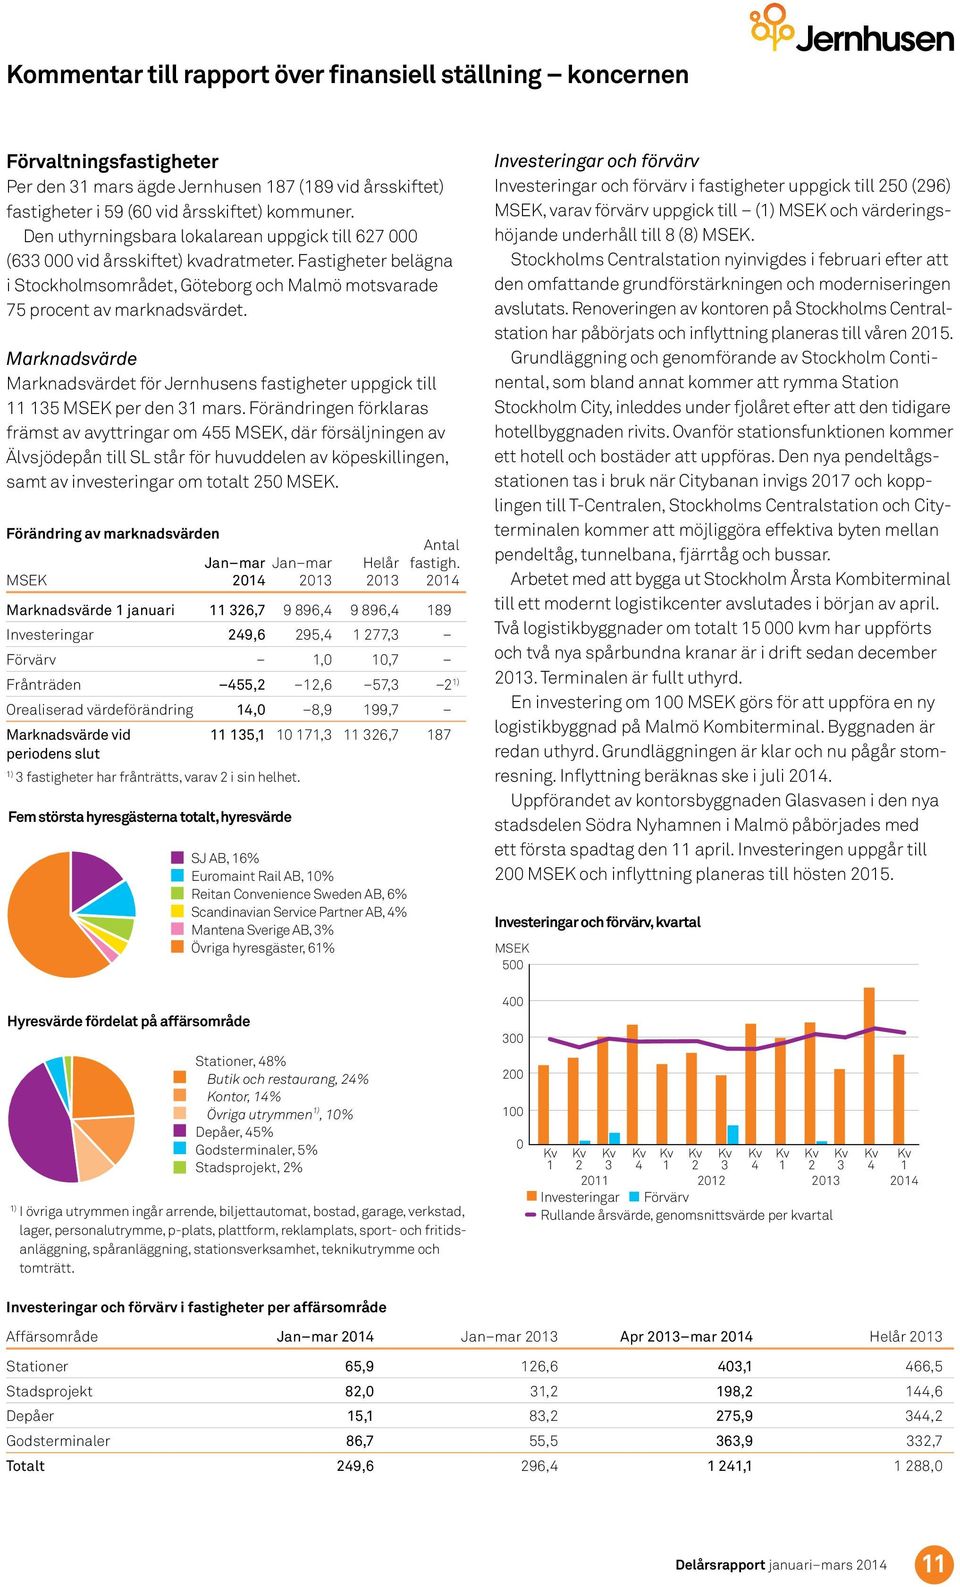 Marknadsvärde Marknadsvärdet för Jernhusens fastigheter uppgick till 11 135 per den 31 mars.